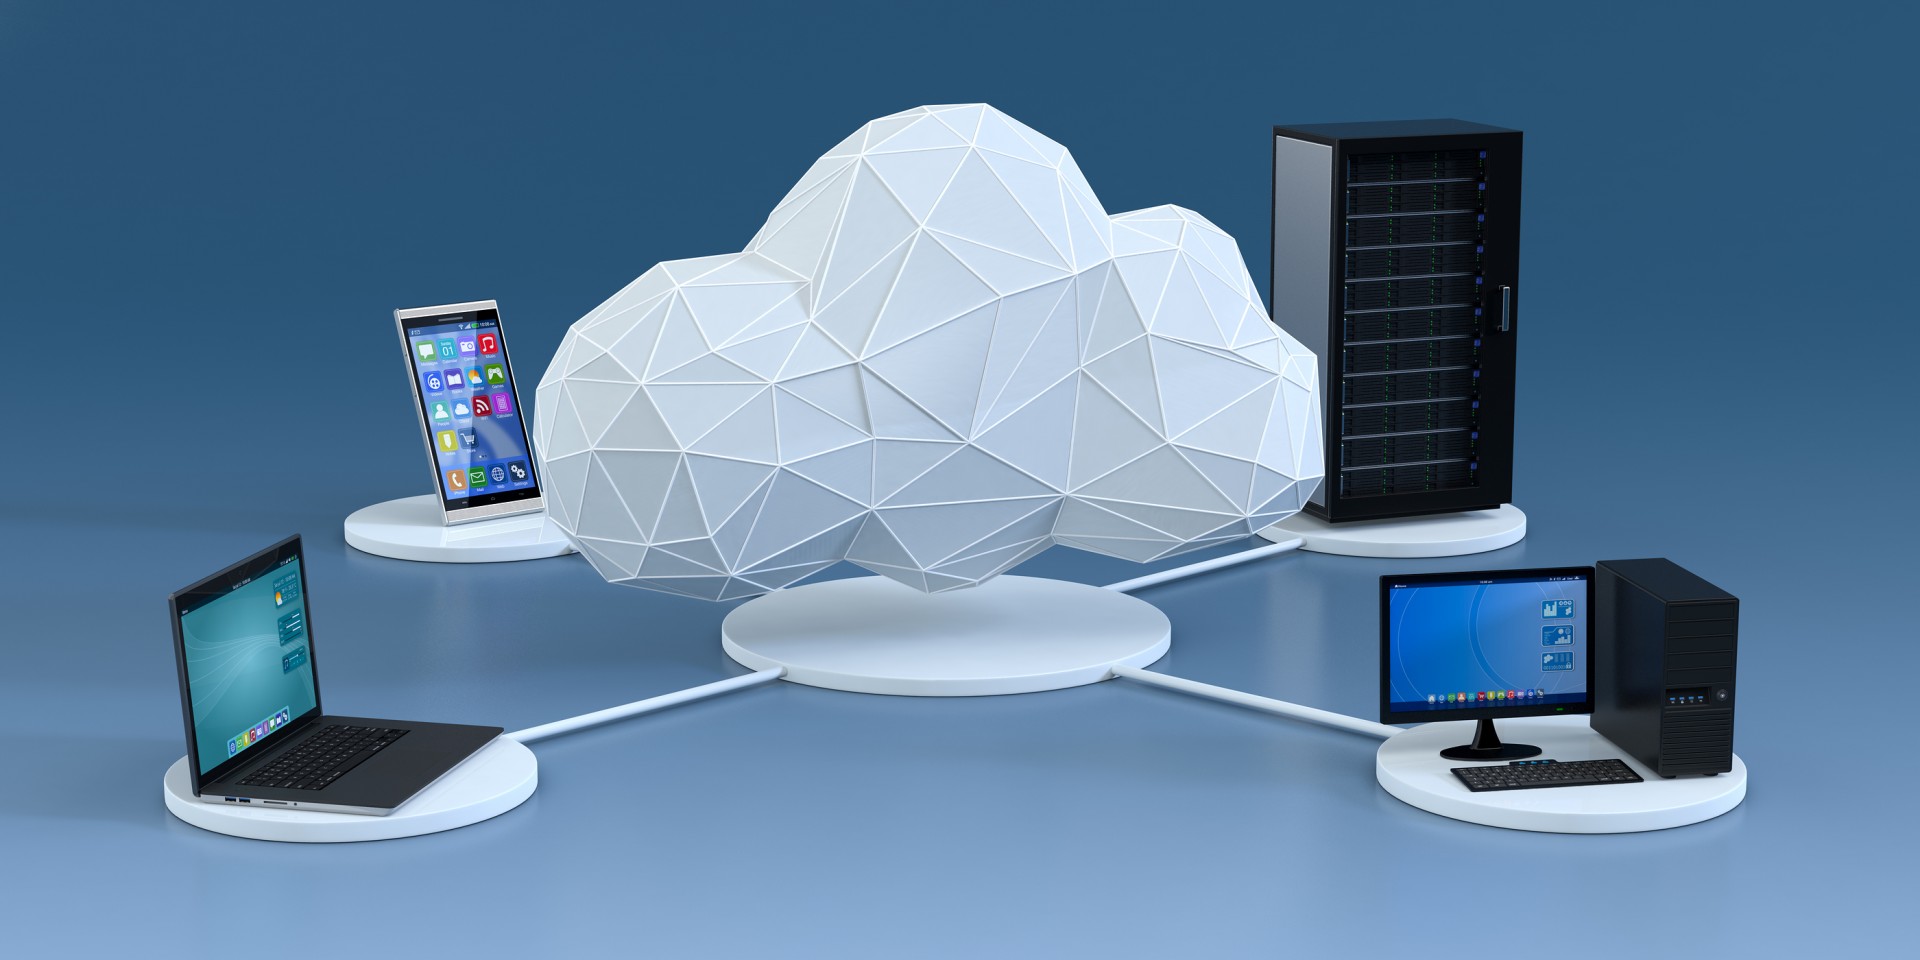 Conceito de nuvem (cloud computing)